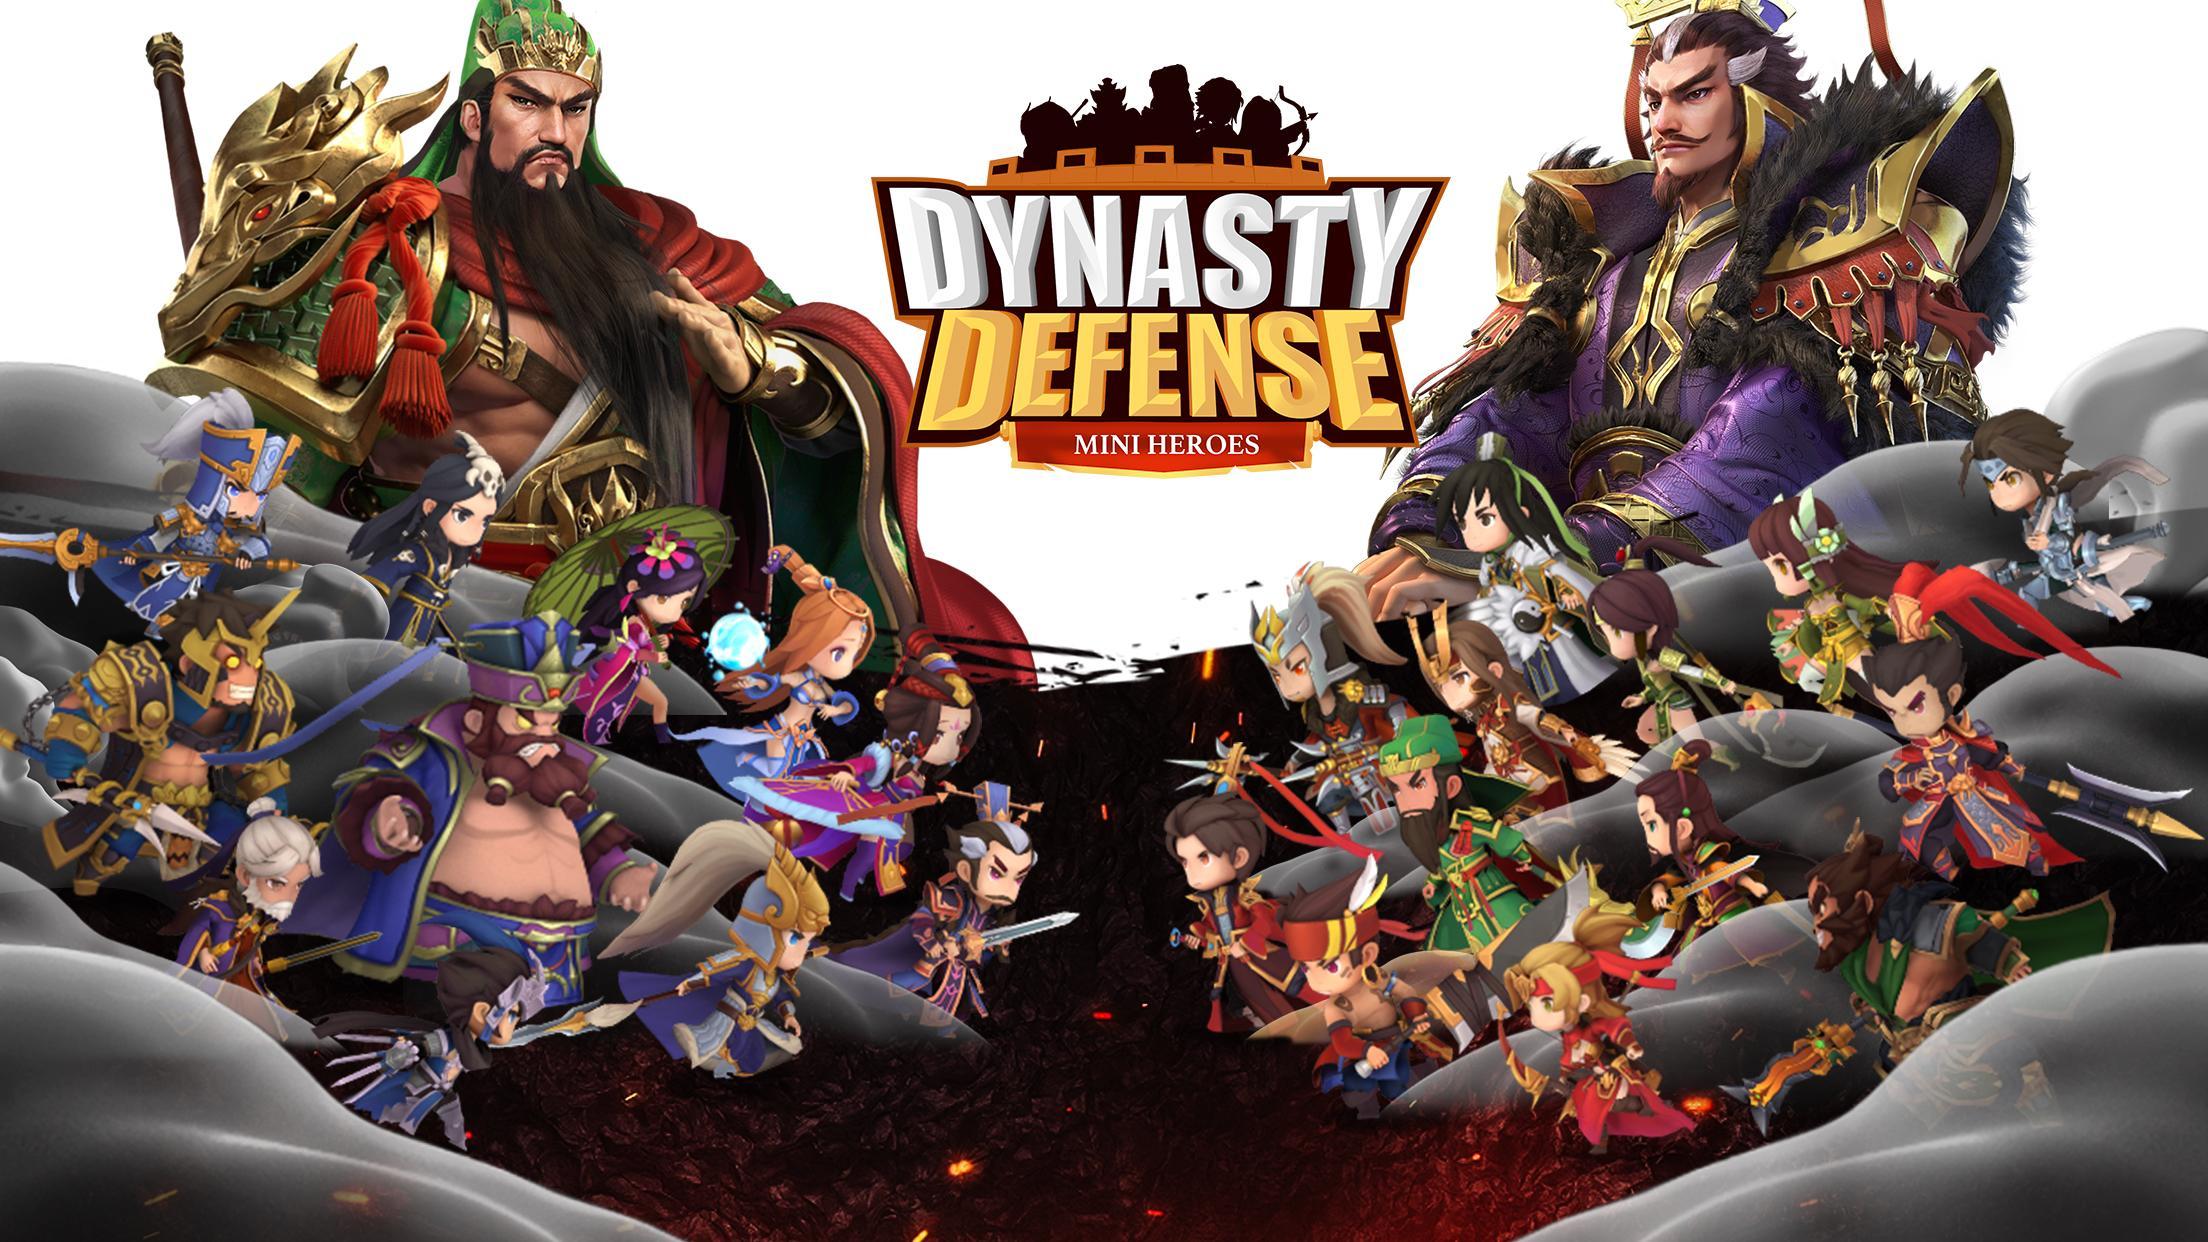 Screenshot 1 of Защита династии: мини-герои 